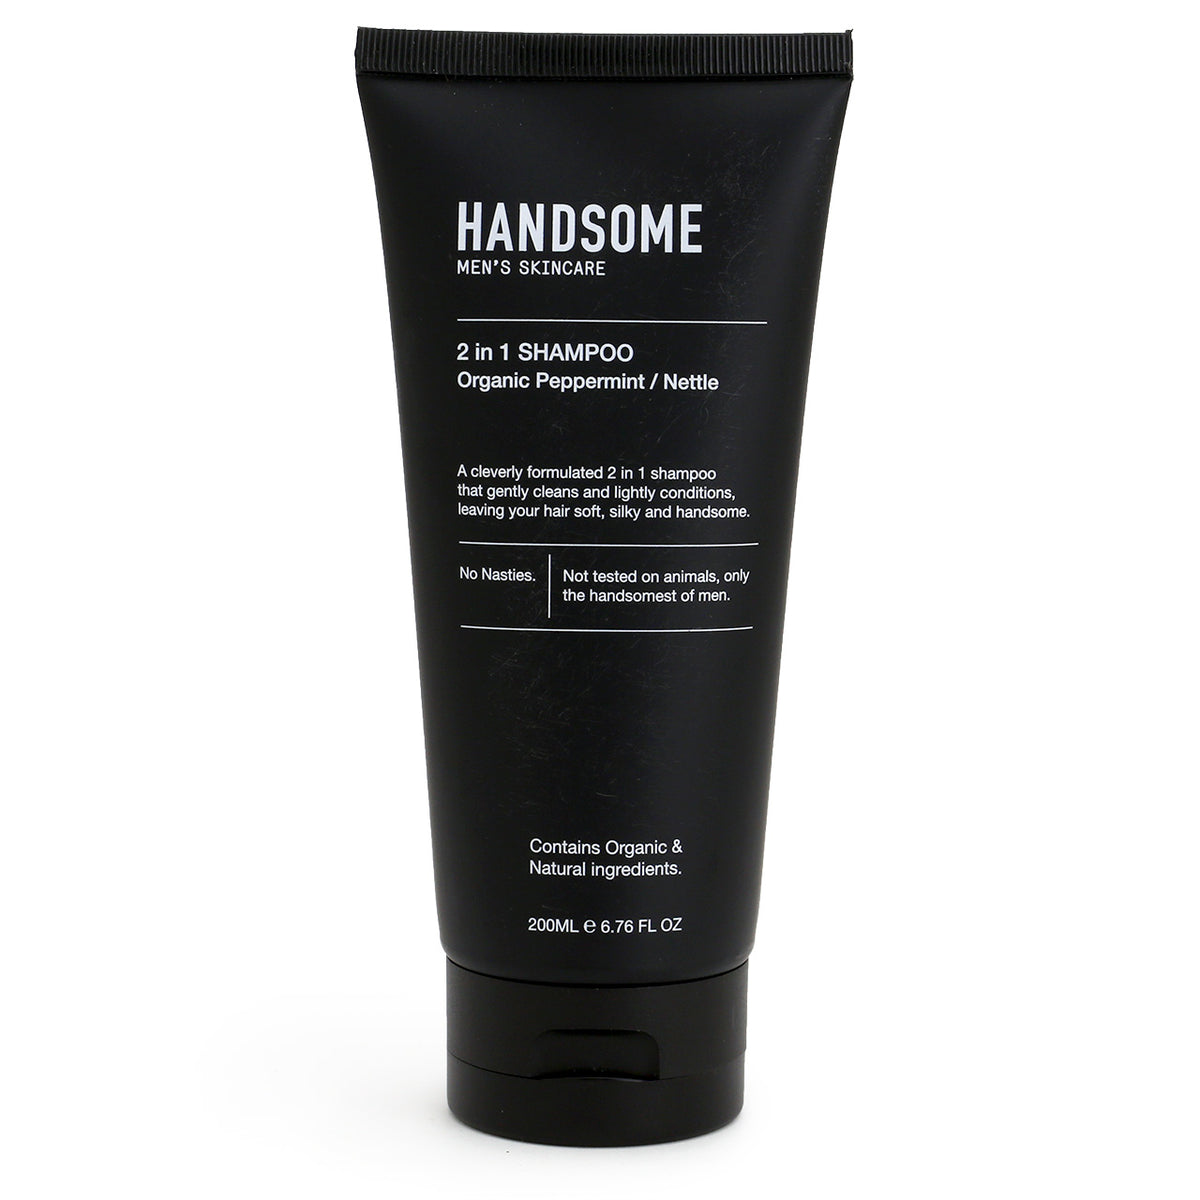 Handsome 2 in 1 Shampoo 200ml tube - Organic Peppermint, Nettle